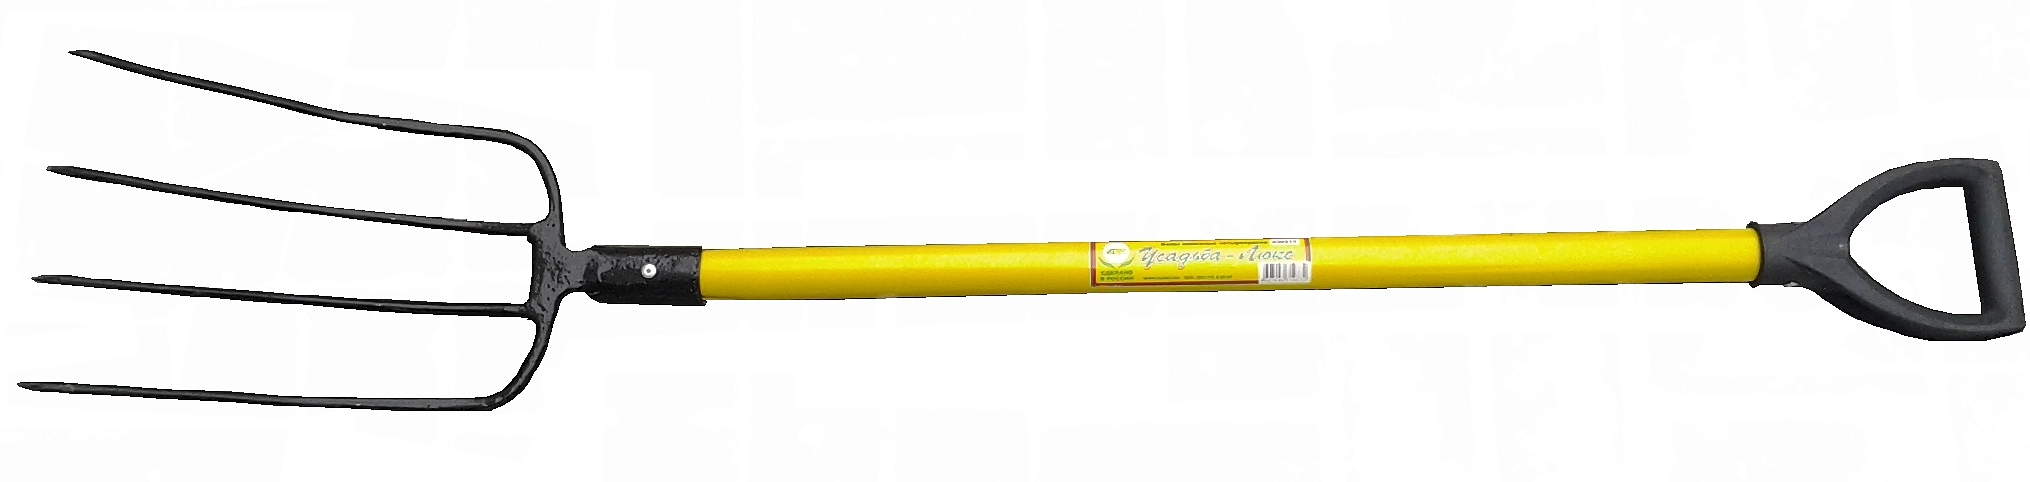 Вилы 4-х рог навозные с желтым метал.черенком и V-ручкой